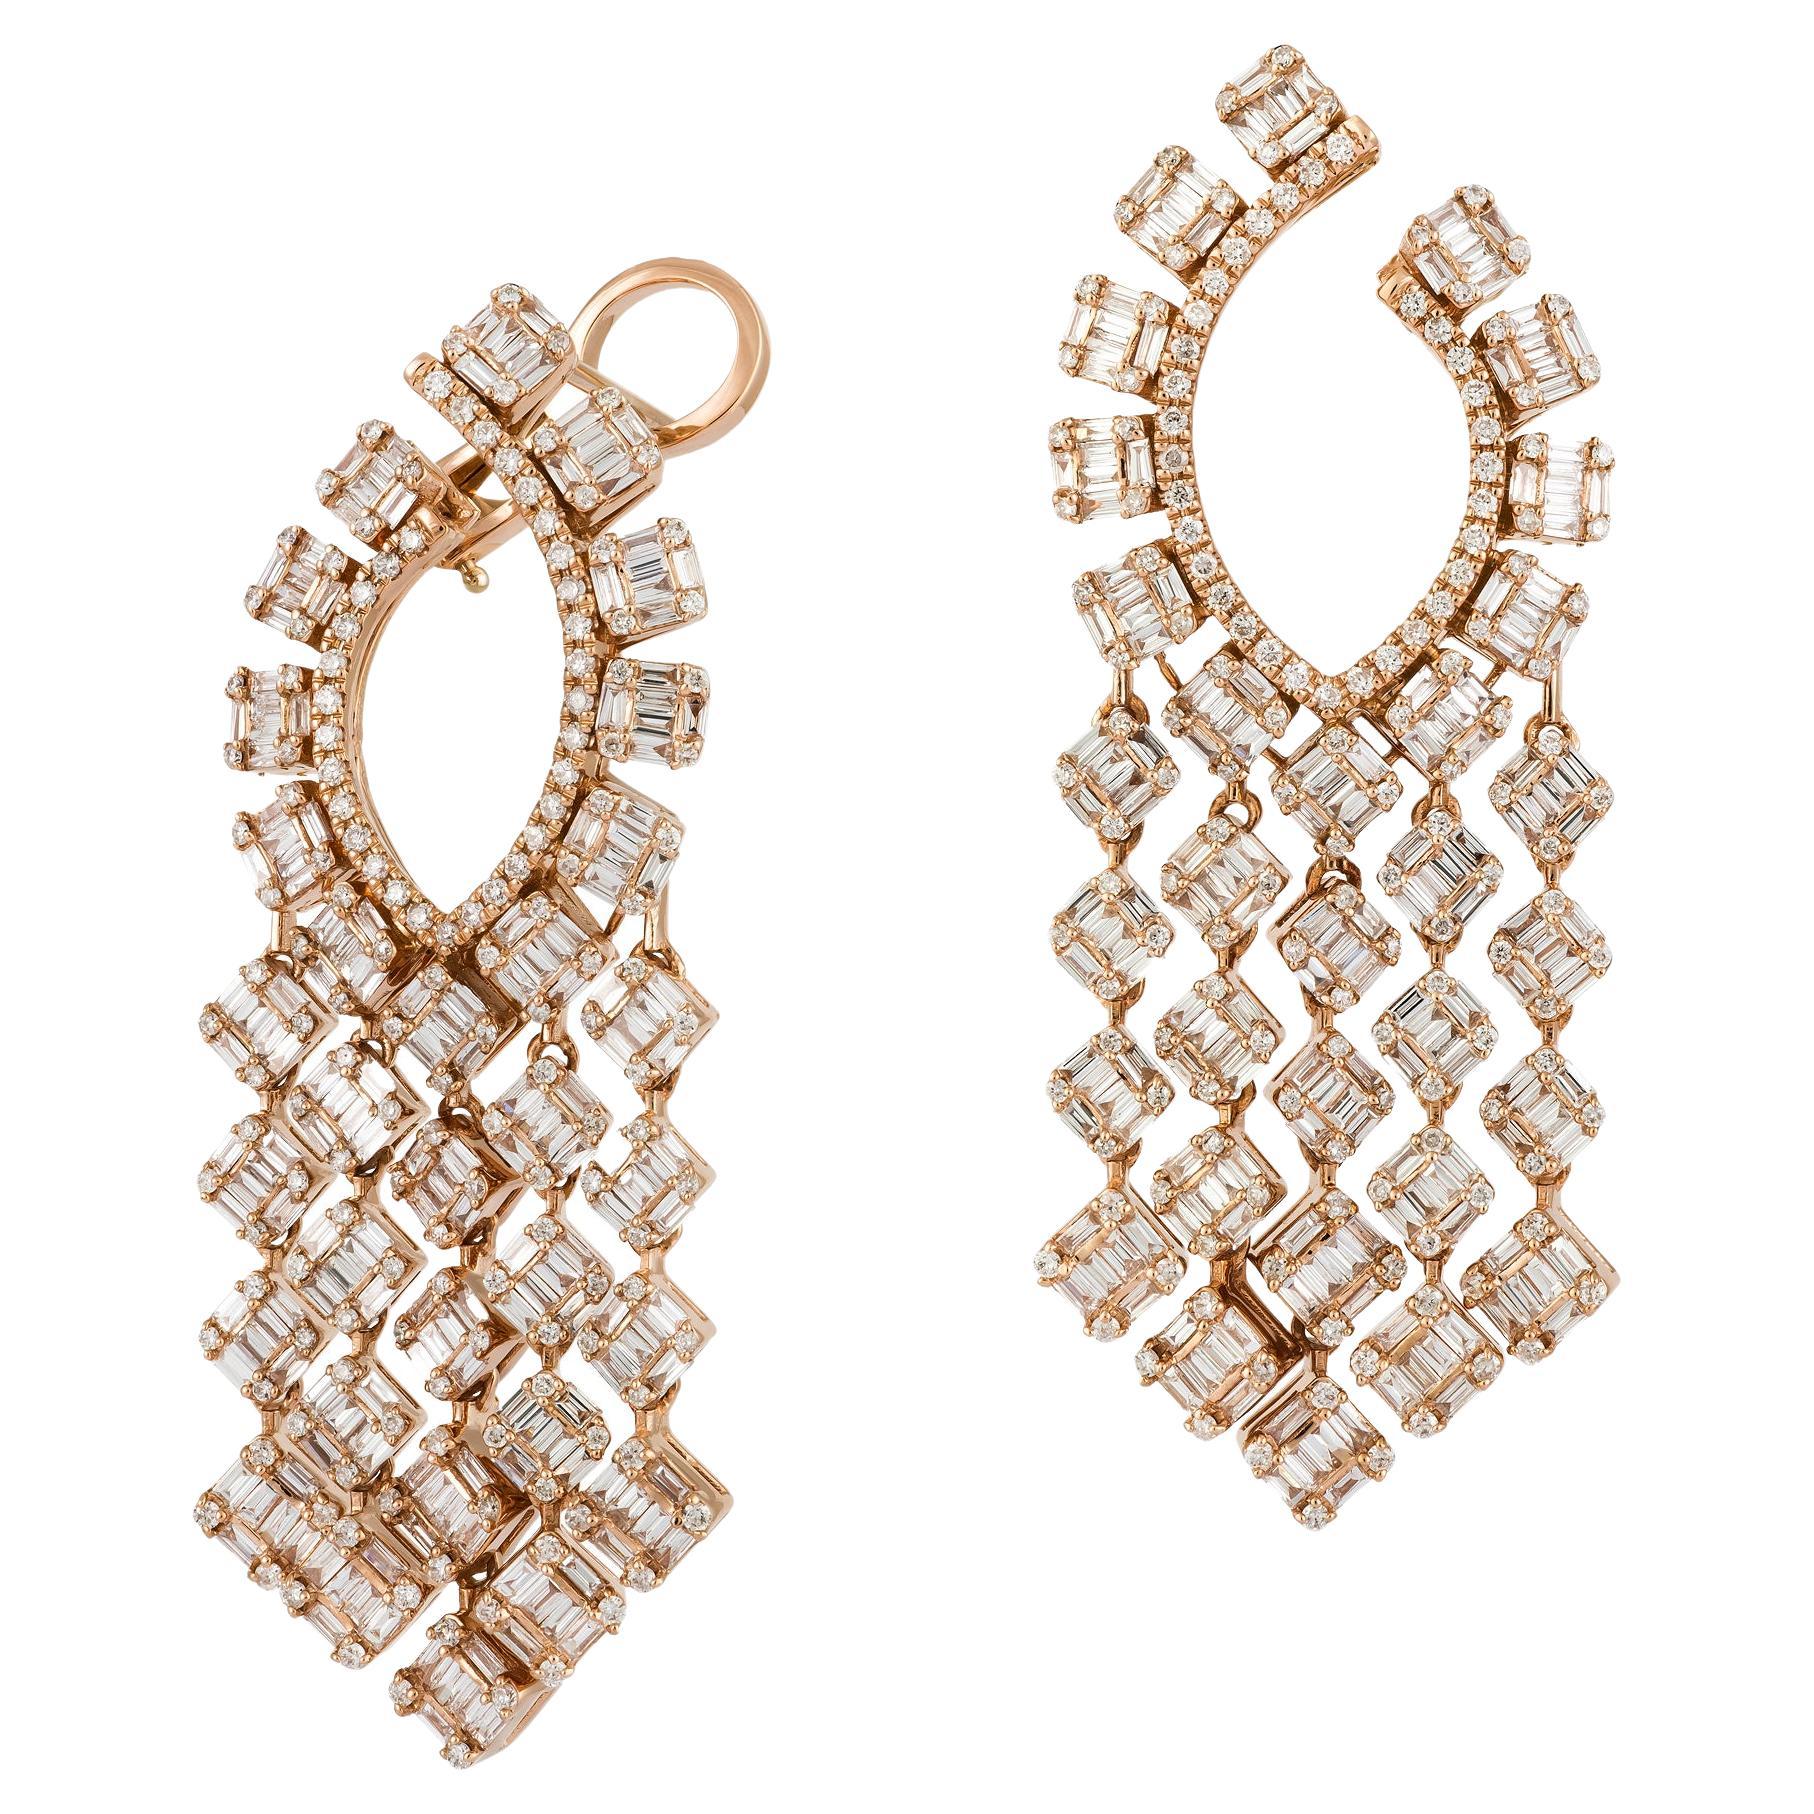 Stunning Dangle White Gold 18K Earrings Diamond for Her